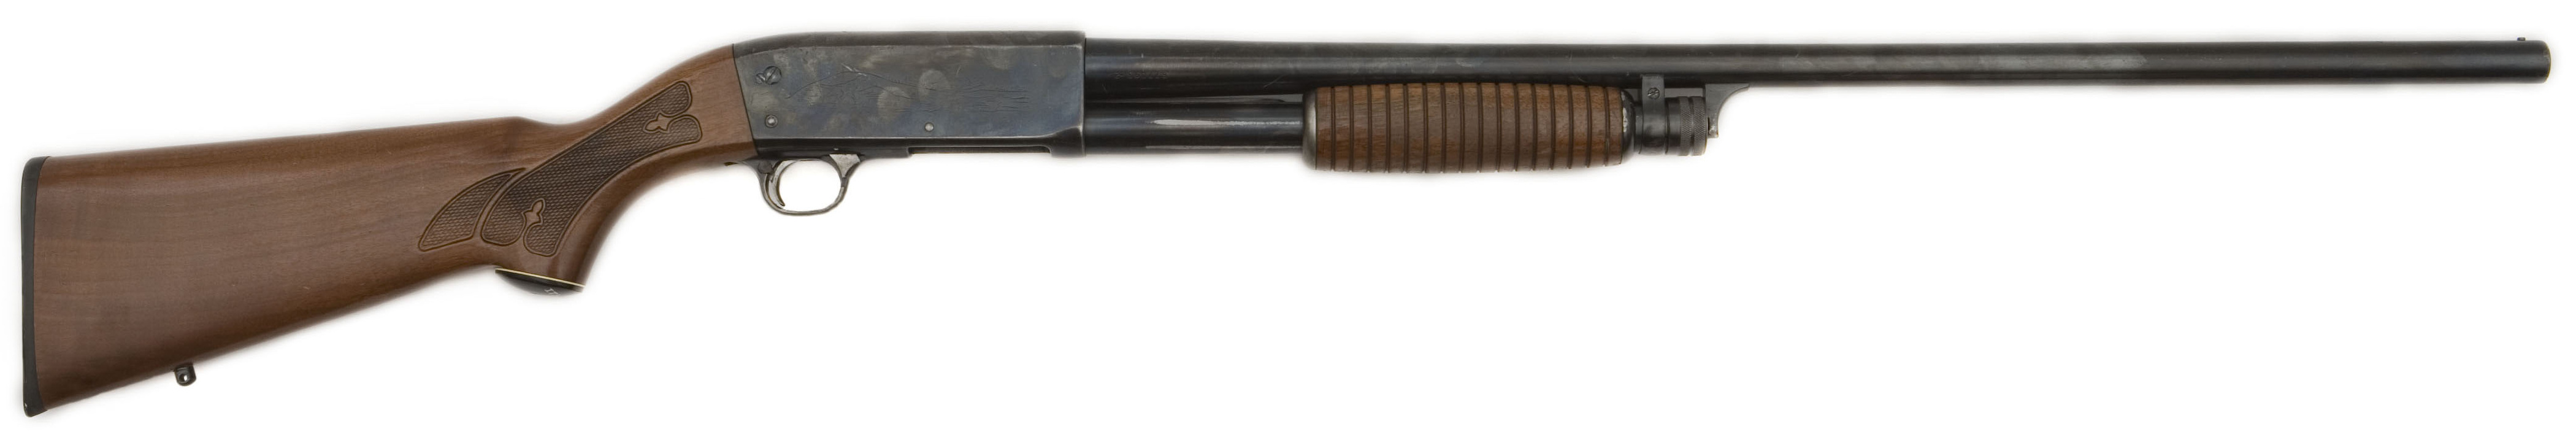 » Archive » The CZ 75, Rico's pistol in Gunslinger Girl